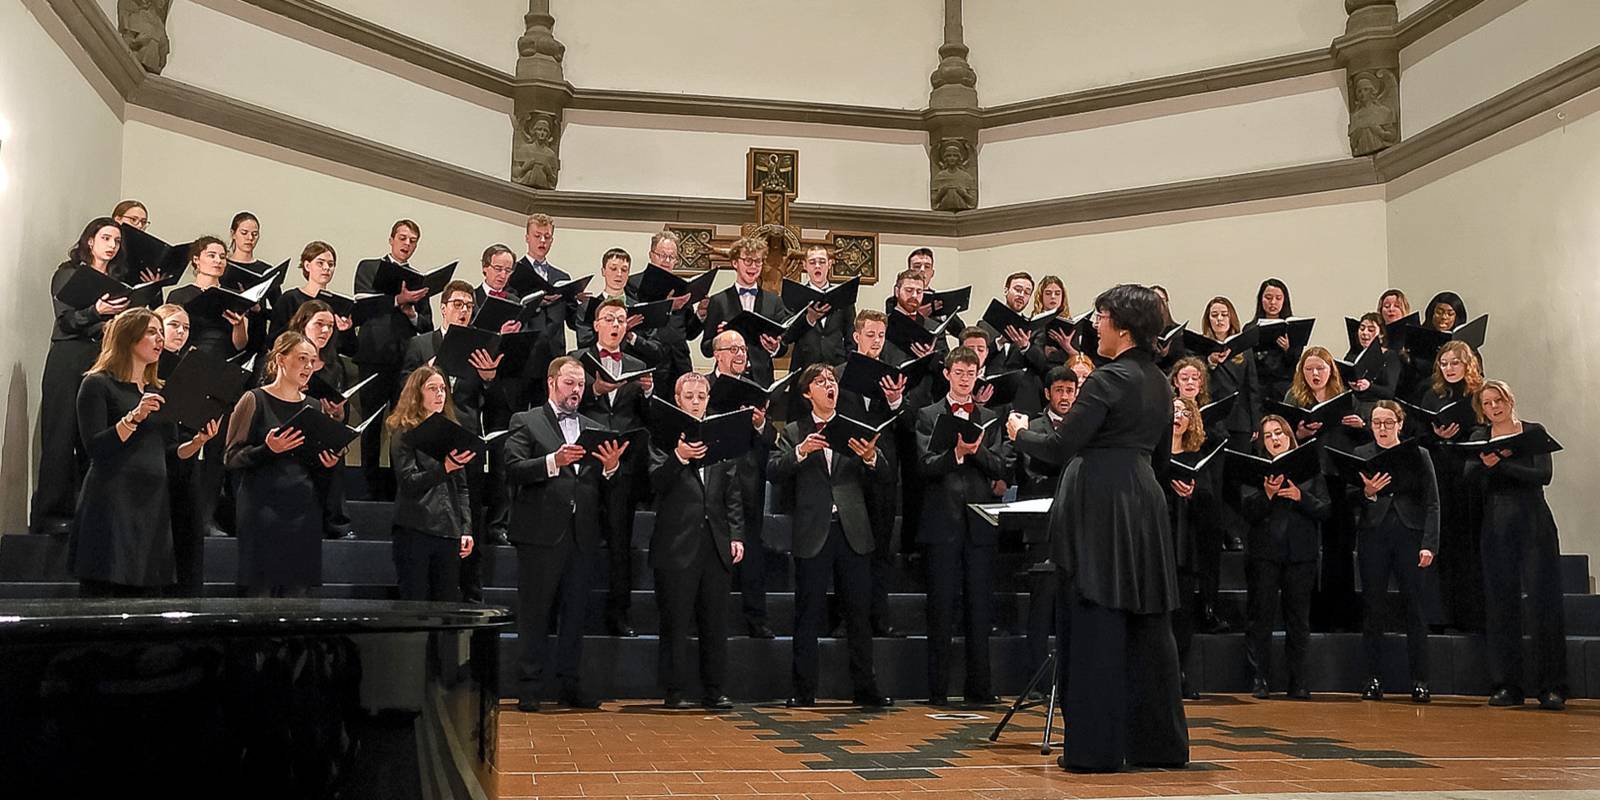 Singender Chor in einer Kirche